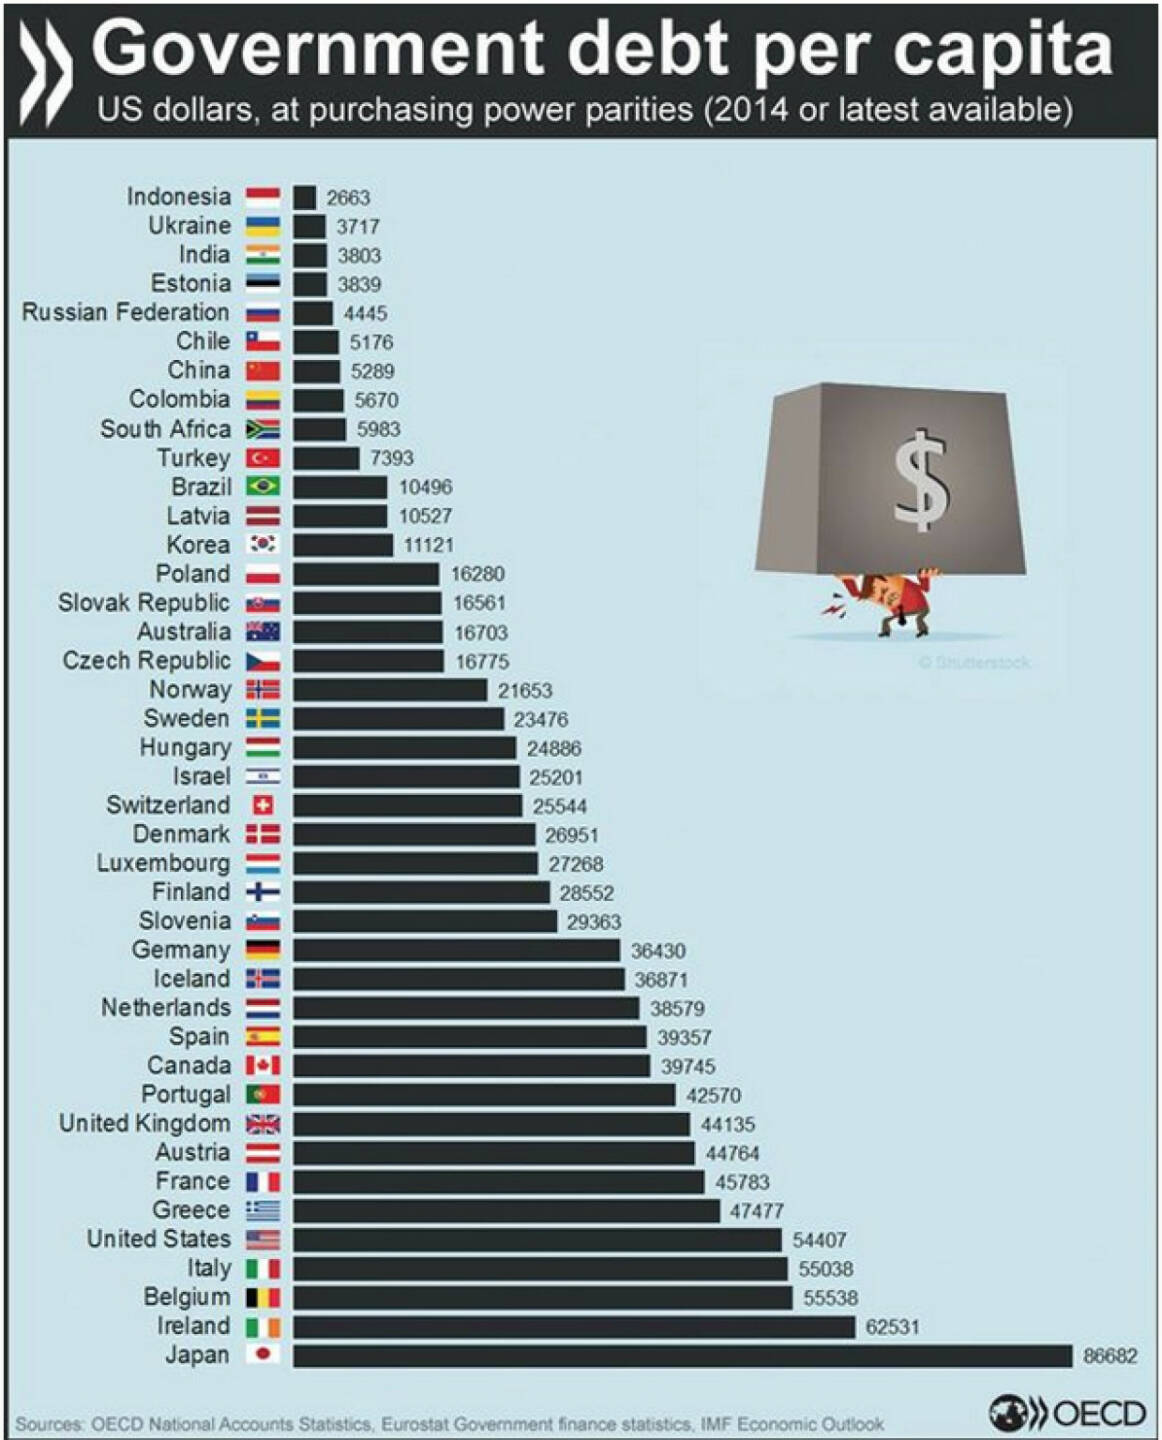 Staatsverschuldung – wie groß ist dein Anteil?
http://bit.ly/1KWd8yO